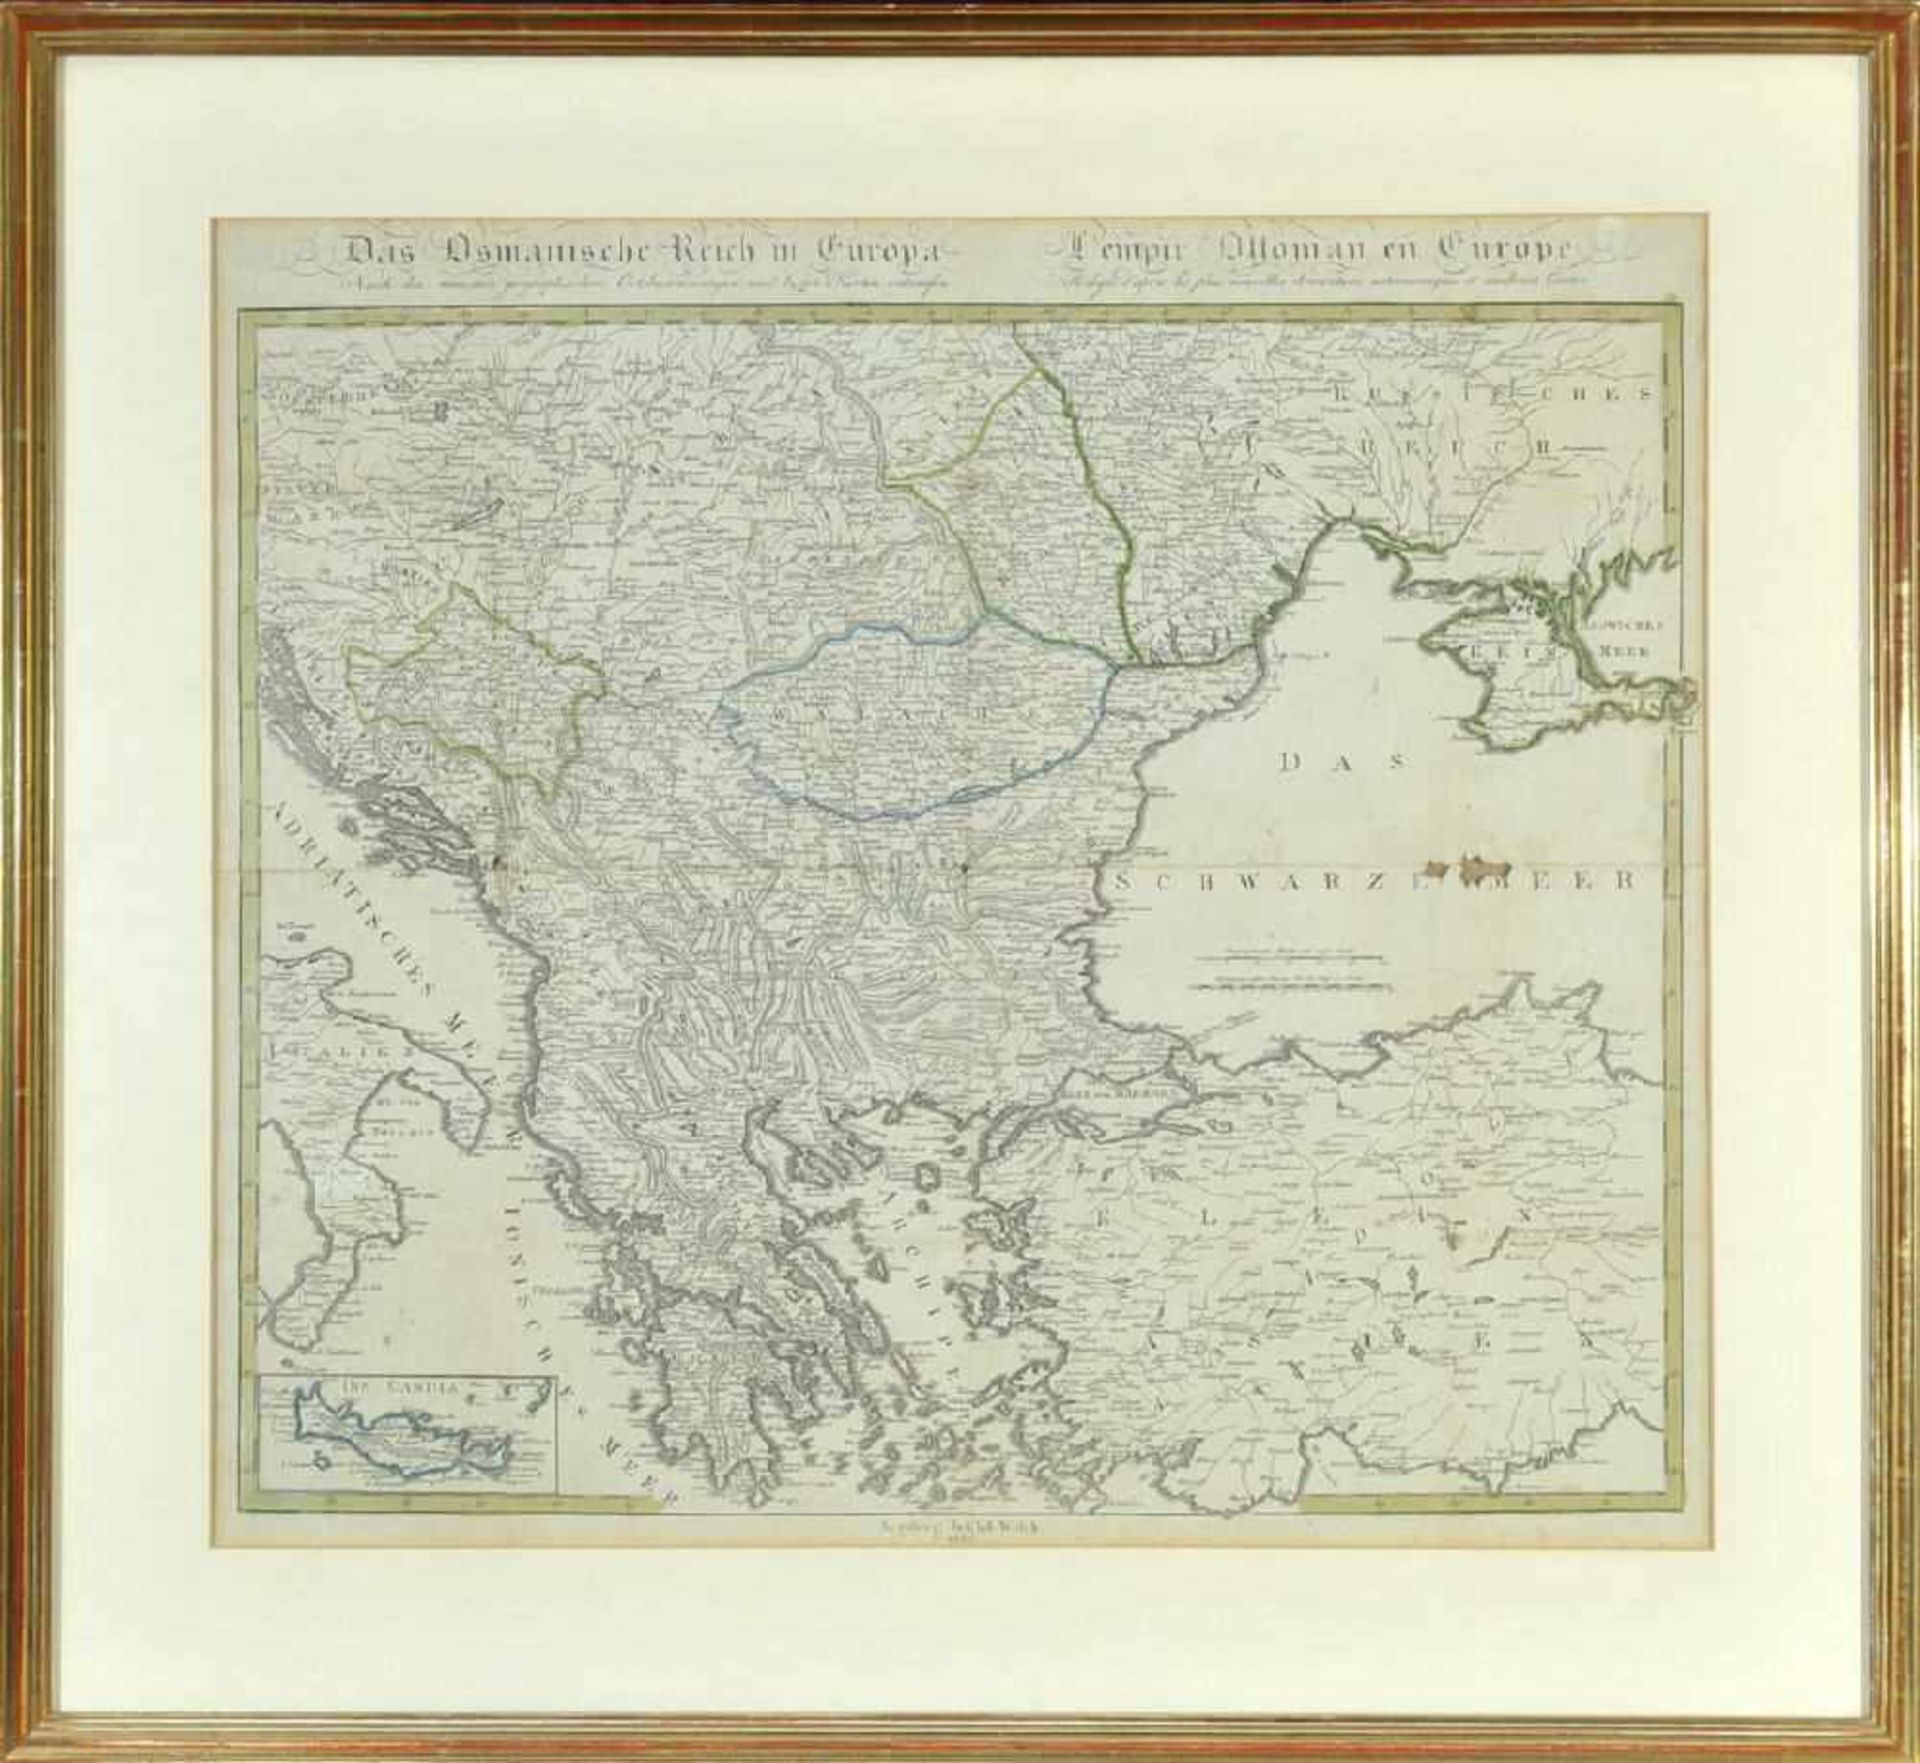 Landkarte "Das germanische Reich in Europa"Kupferstich, teilcolor., 49 x 58 cm, bei Walch, Augsburg,